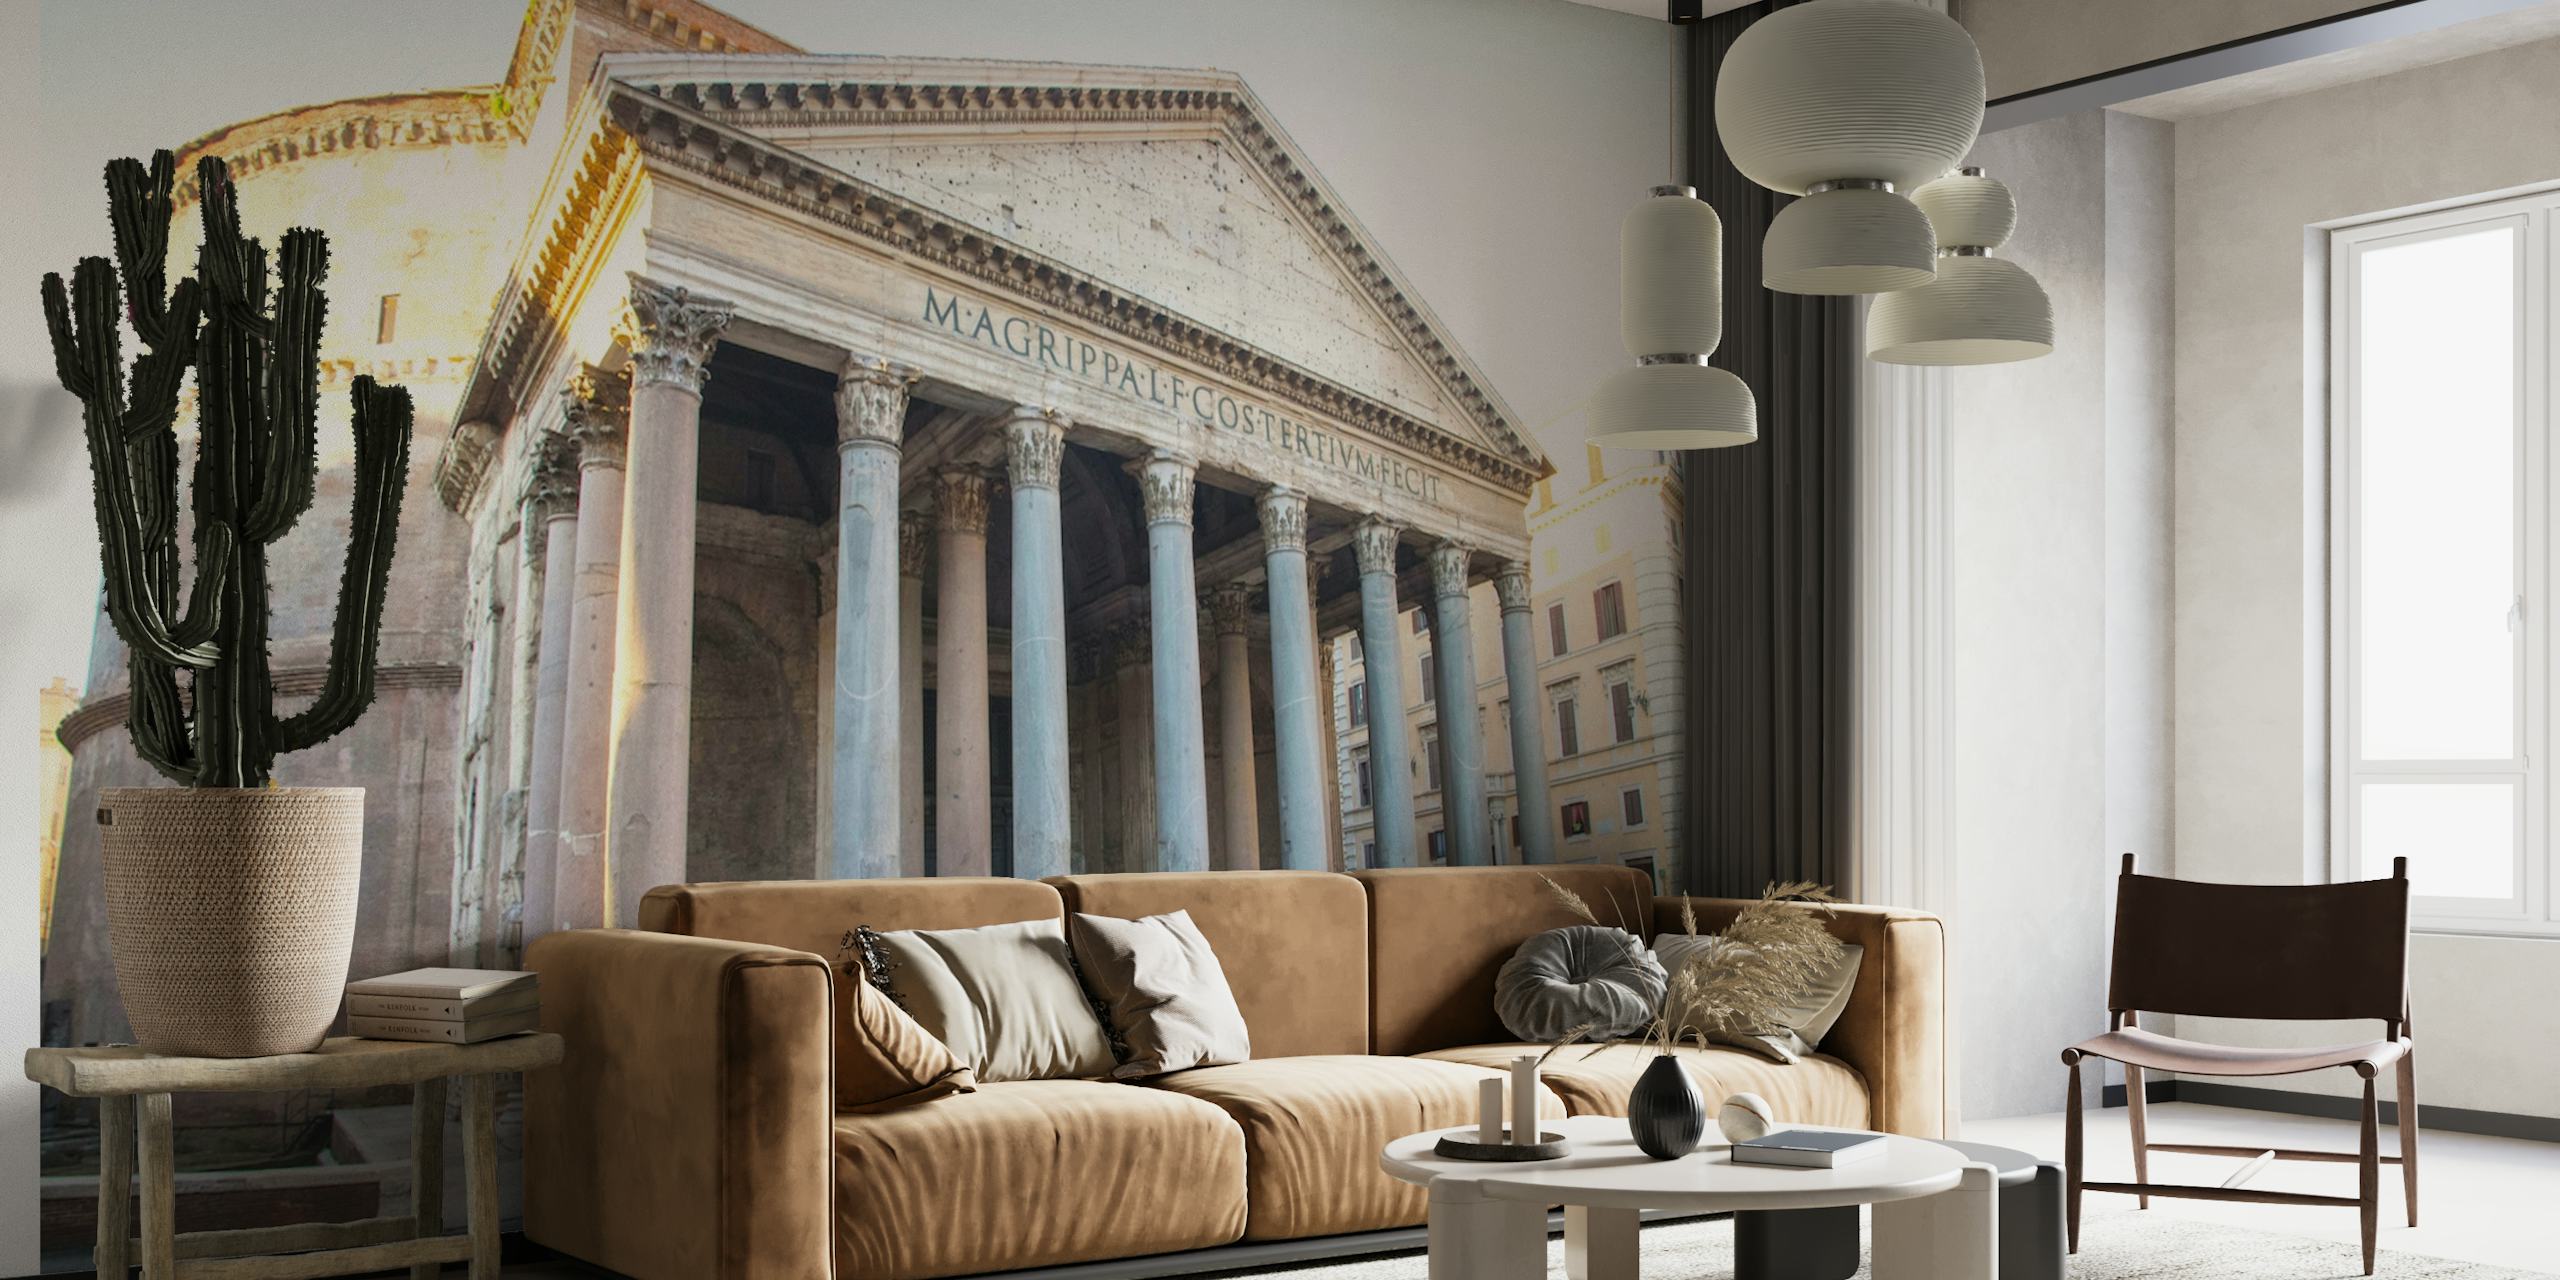 Fototapeta Chwalebny Panteon w Rzymie przedstawiająca front starożytnej świątyni z klasycznymi kolumnami.